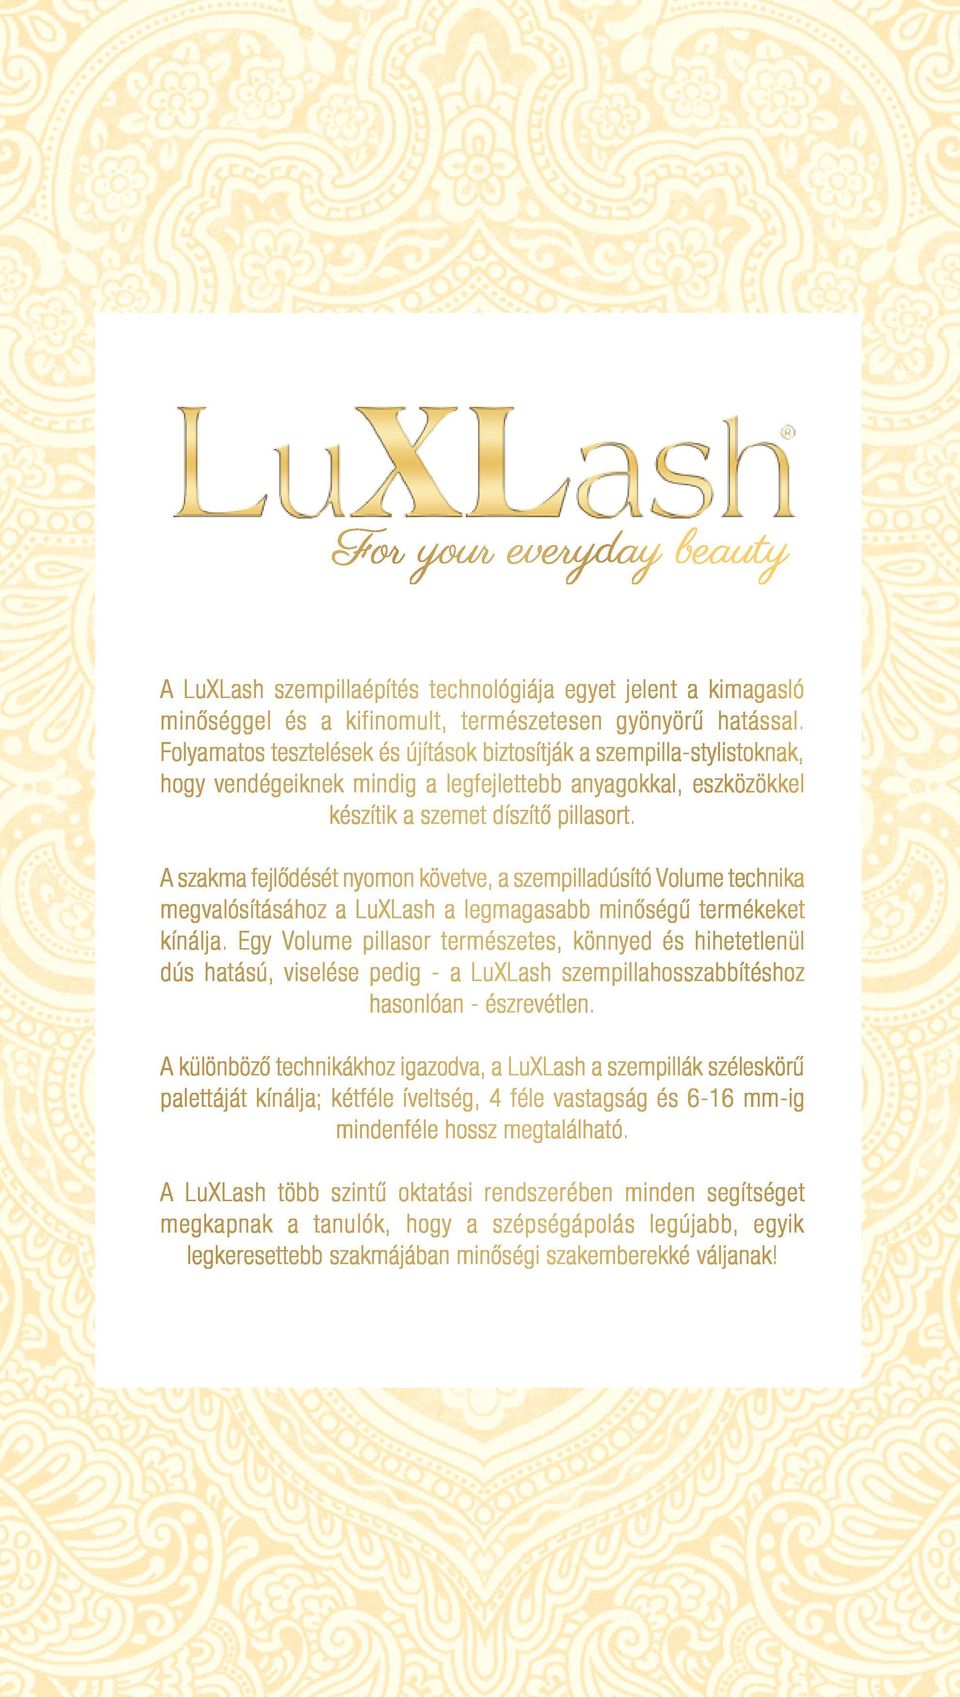 A szakma fejlődését nyomon követve, a szempilladúsító Volume technika megvalósításához a LuXLash a legmagasabb minőségű termékeket kínálja.